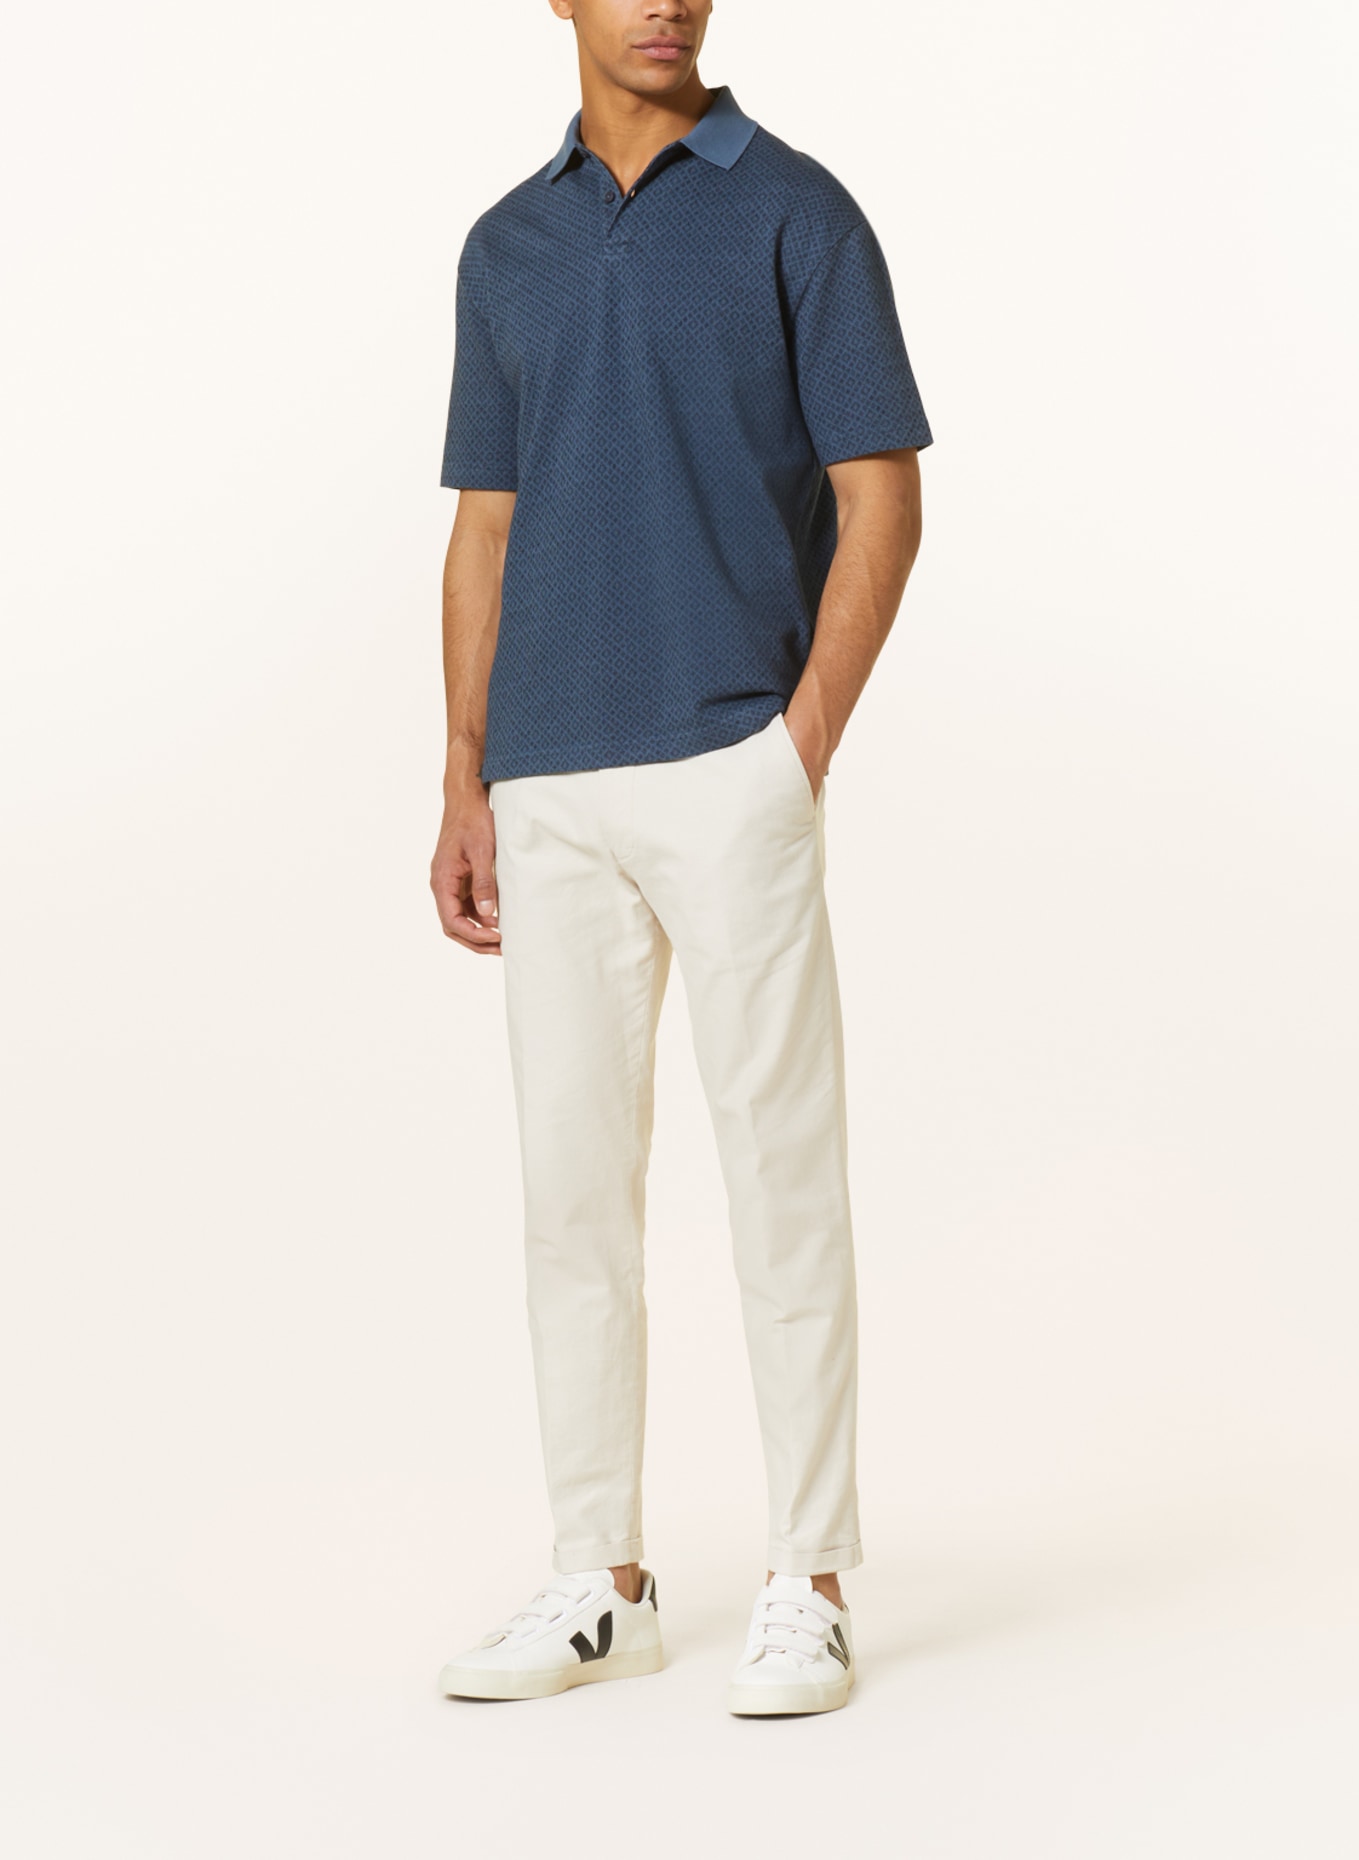 Marc O'Polo Piqué-Poloshirt Relaxed Fit, Farbe: BLAUGRAU/ DUNKELBLAU (Bild 2)